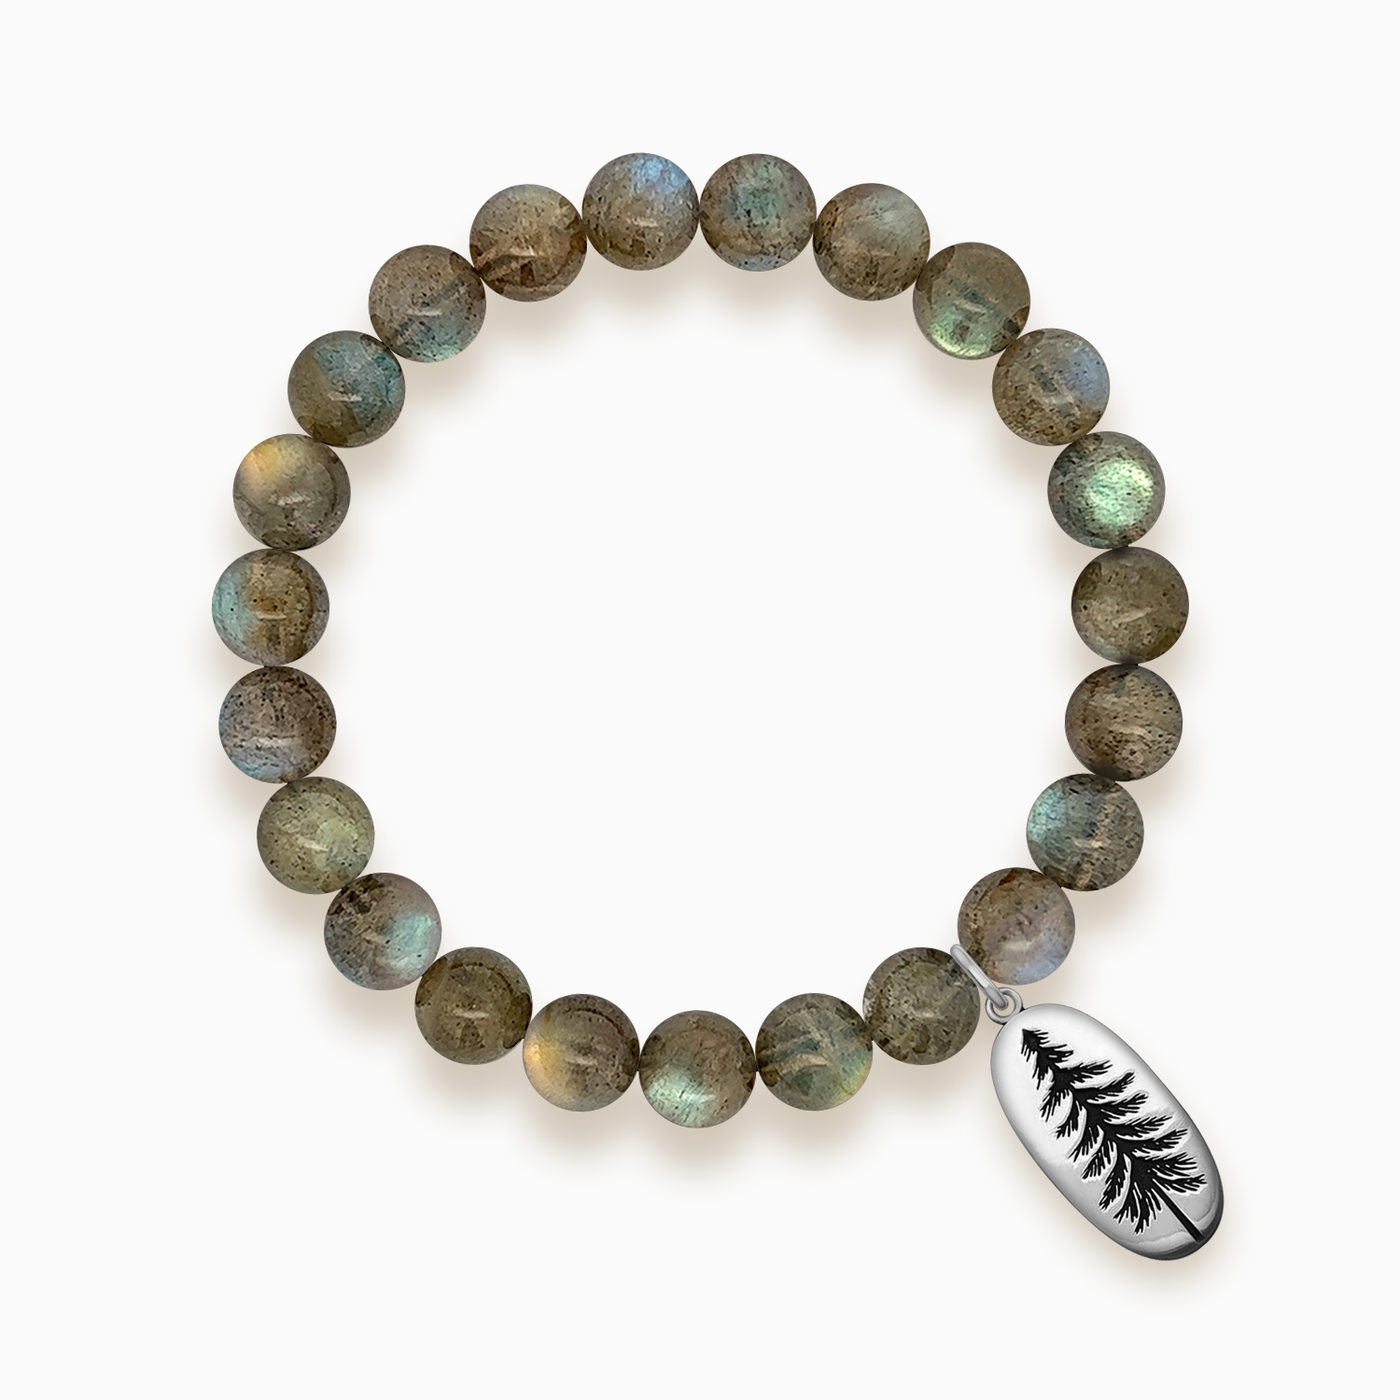 Gemstone Stacker Bracelet With Pine Tree Charm